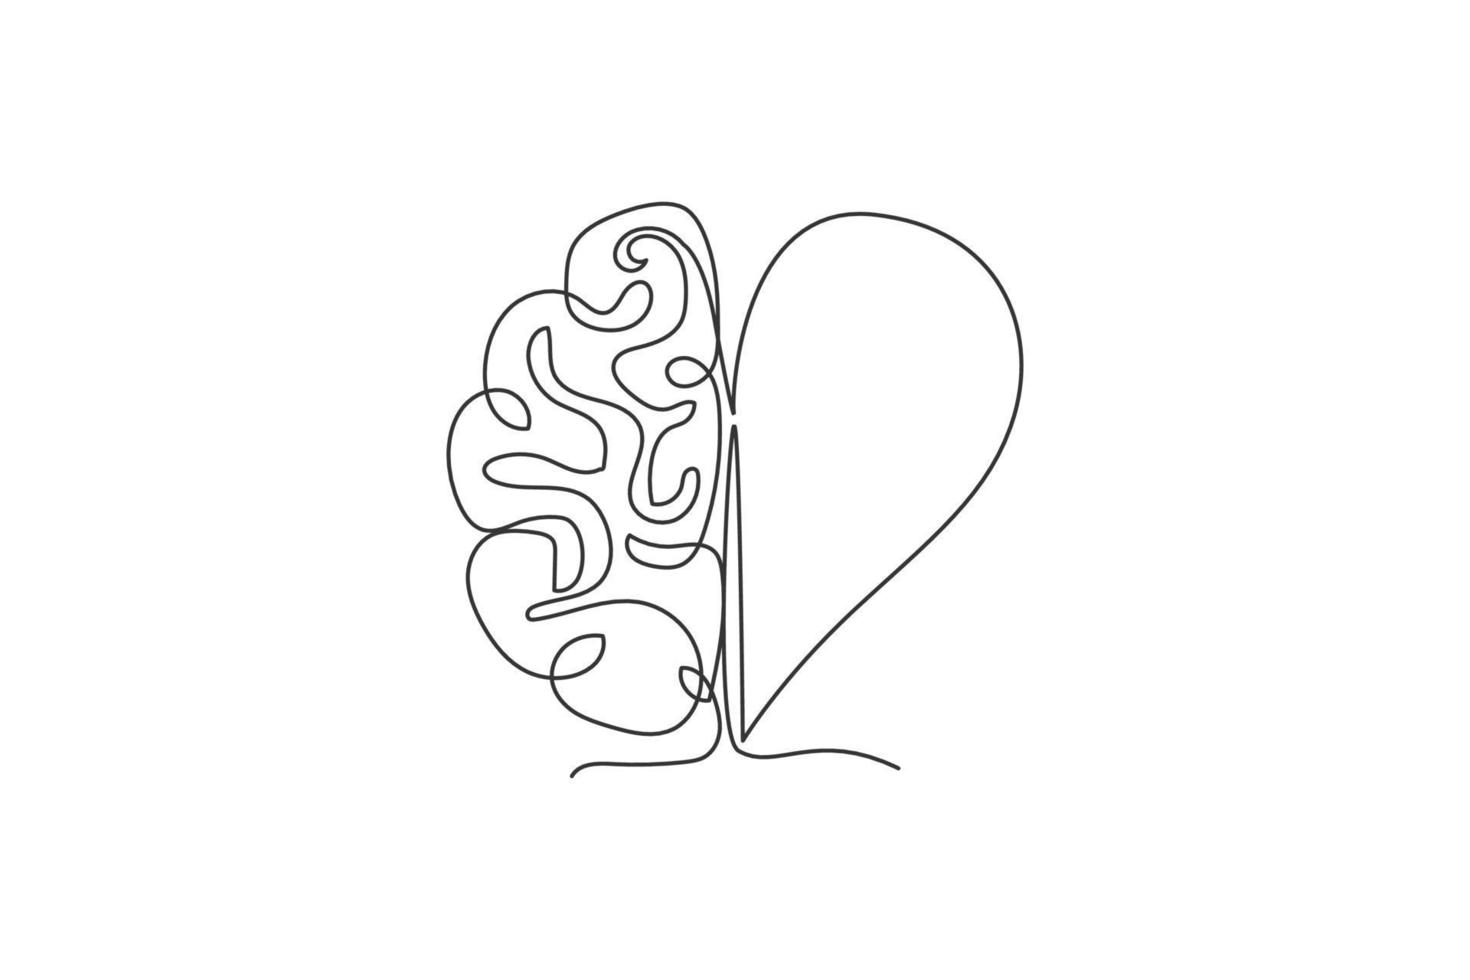 um desenho de linha contínua de metade do cérebro humano e o ícone do logotipo de forma de coração de amor. conceito de modelo de símbolo de logotipo de afeto divisão psicológica. ilustração em vetor desenho desenho de linha única na moda